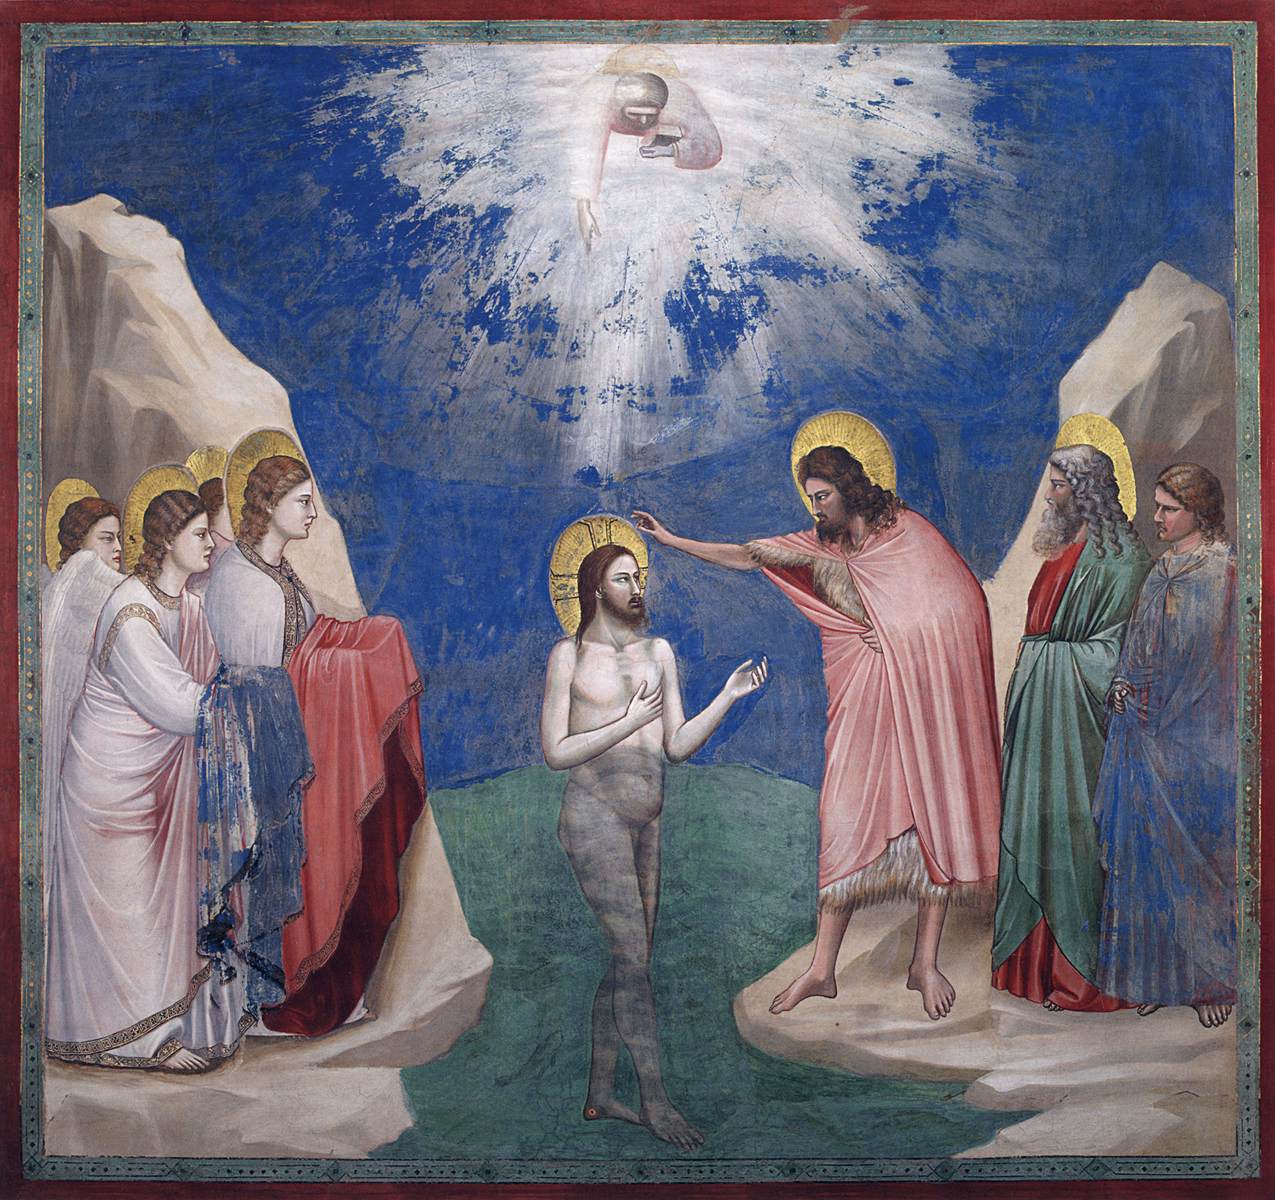 Nr. 23 scener af Kristi liv: 7 dåb af Kristus